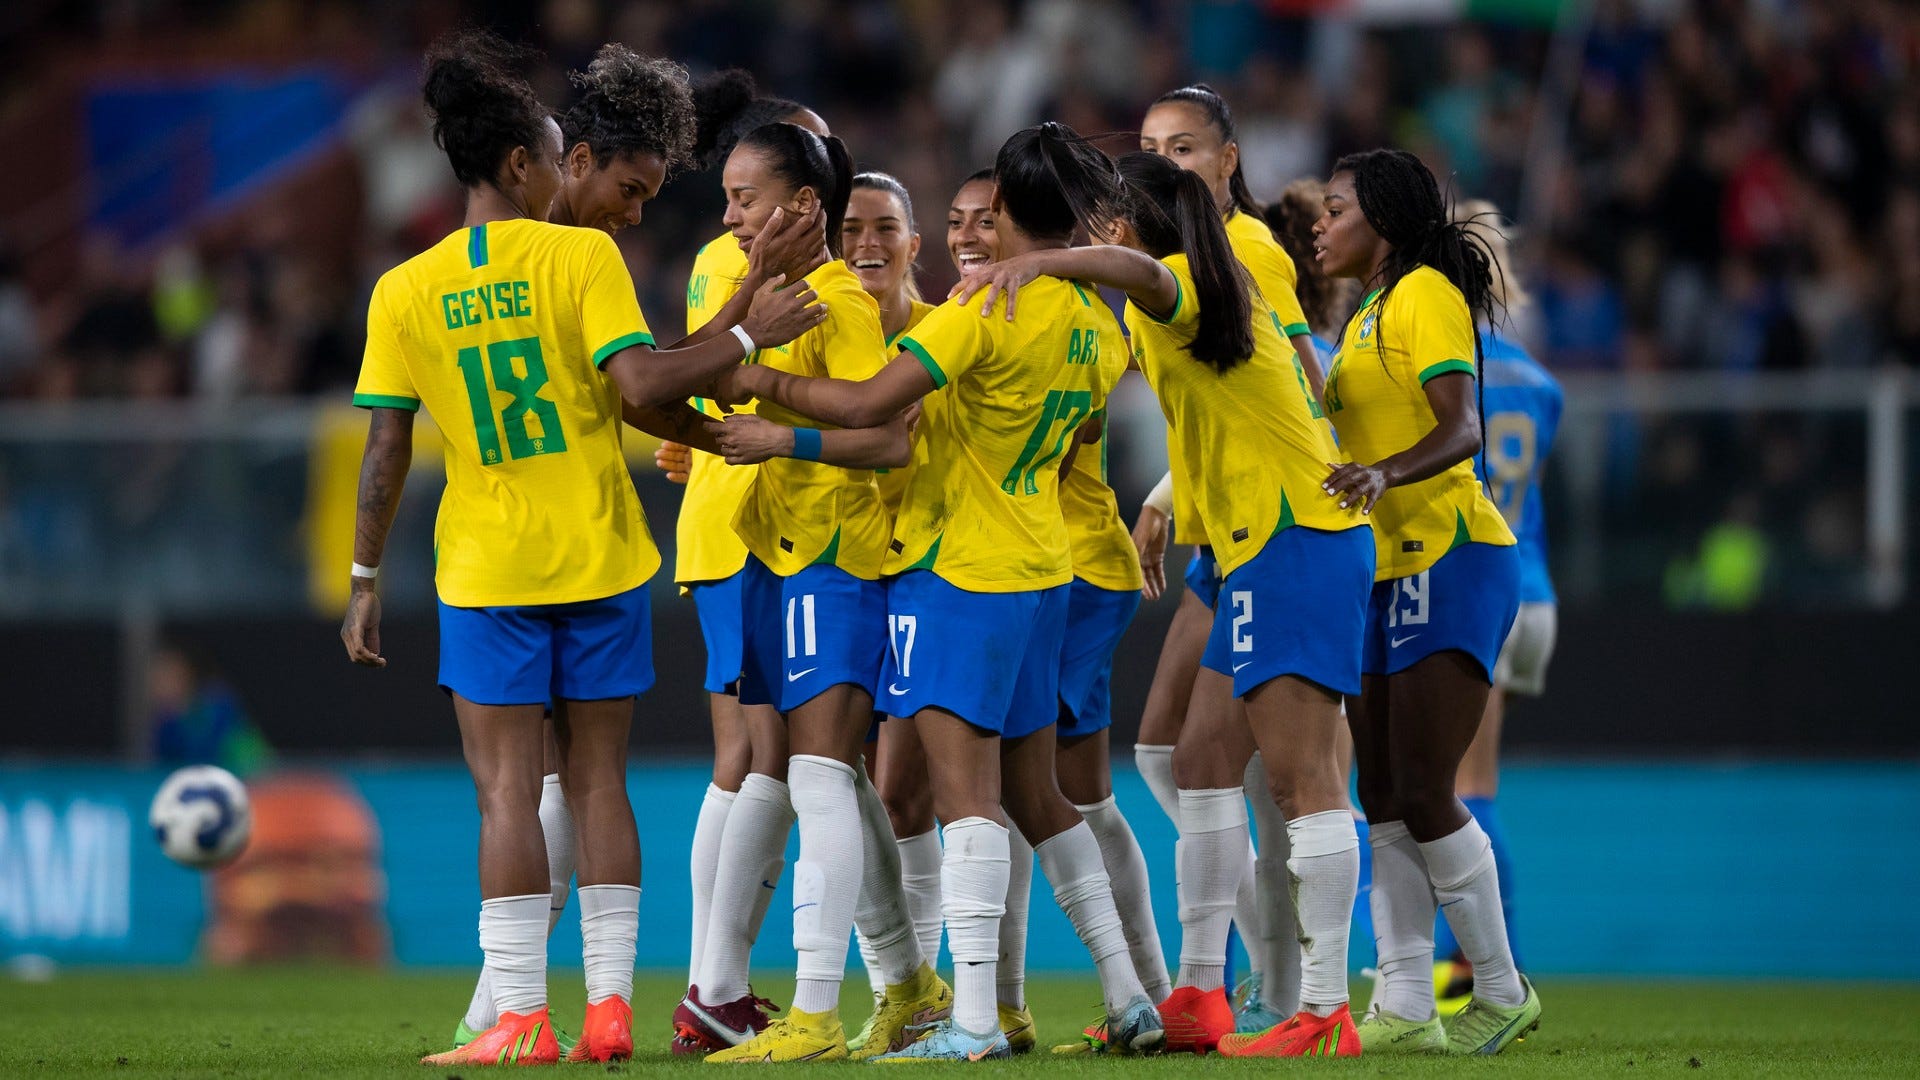 O que podemos esperar da seleção brasileira feminina em 2023? Goal